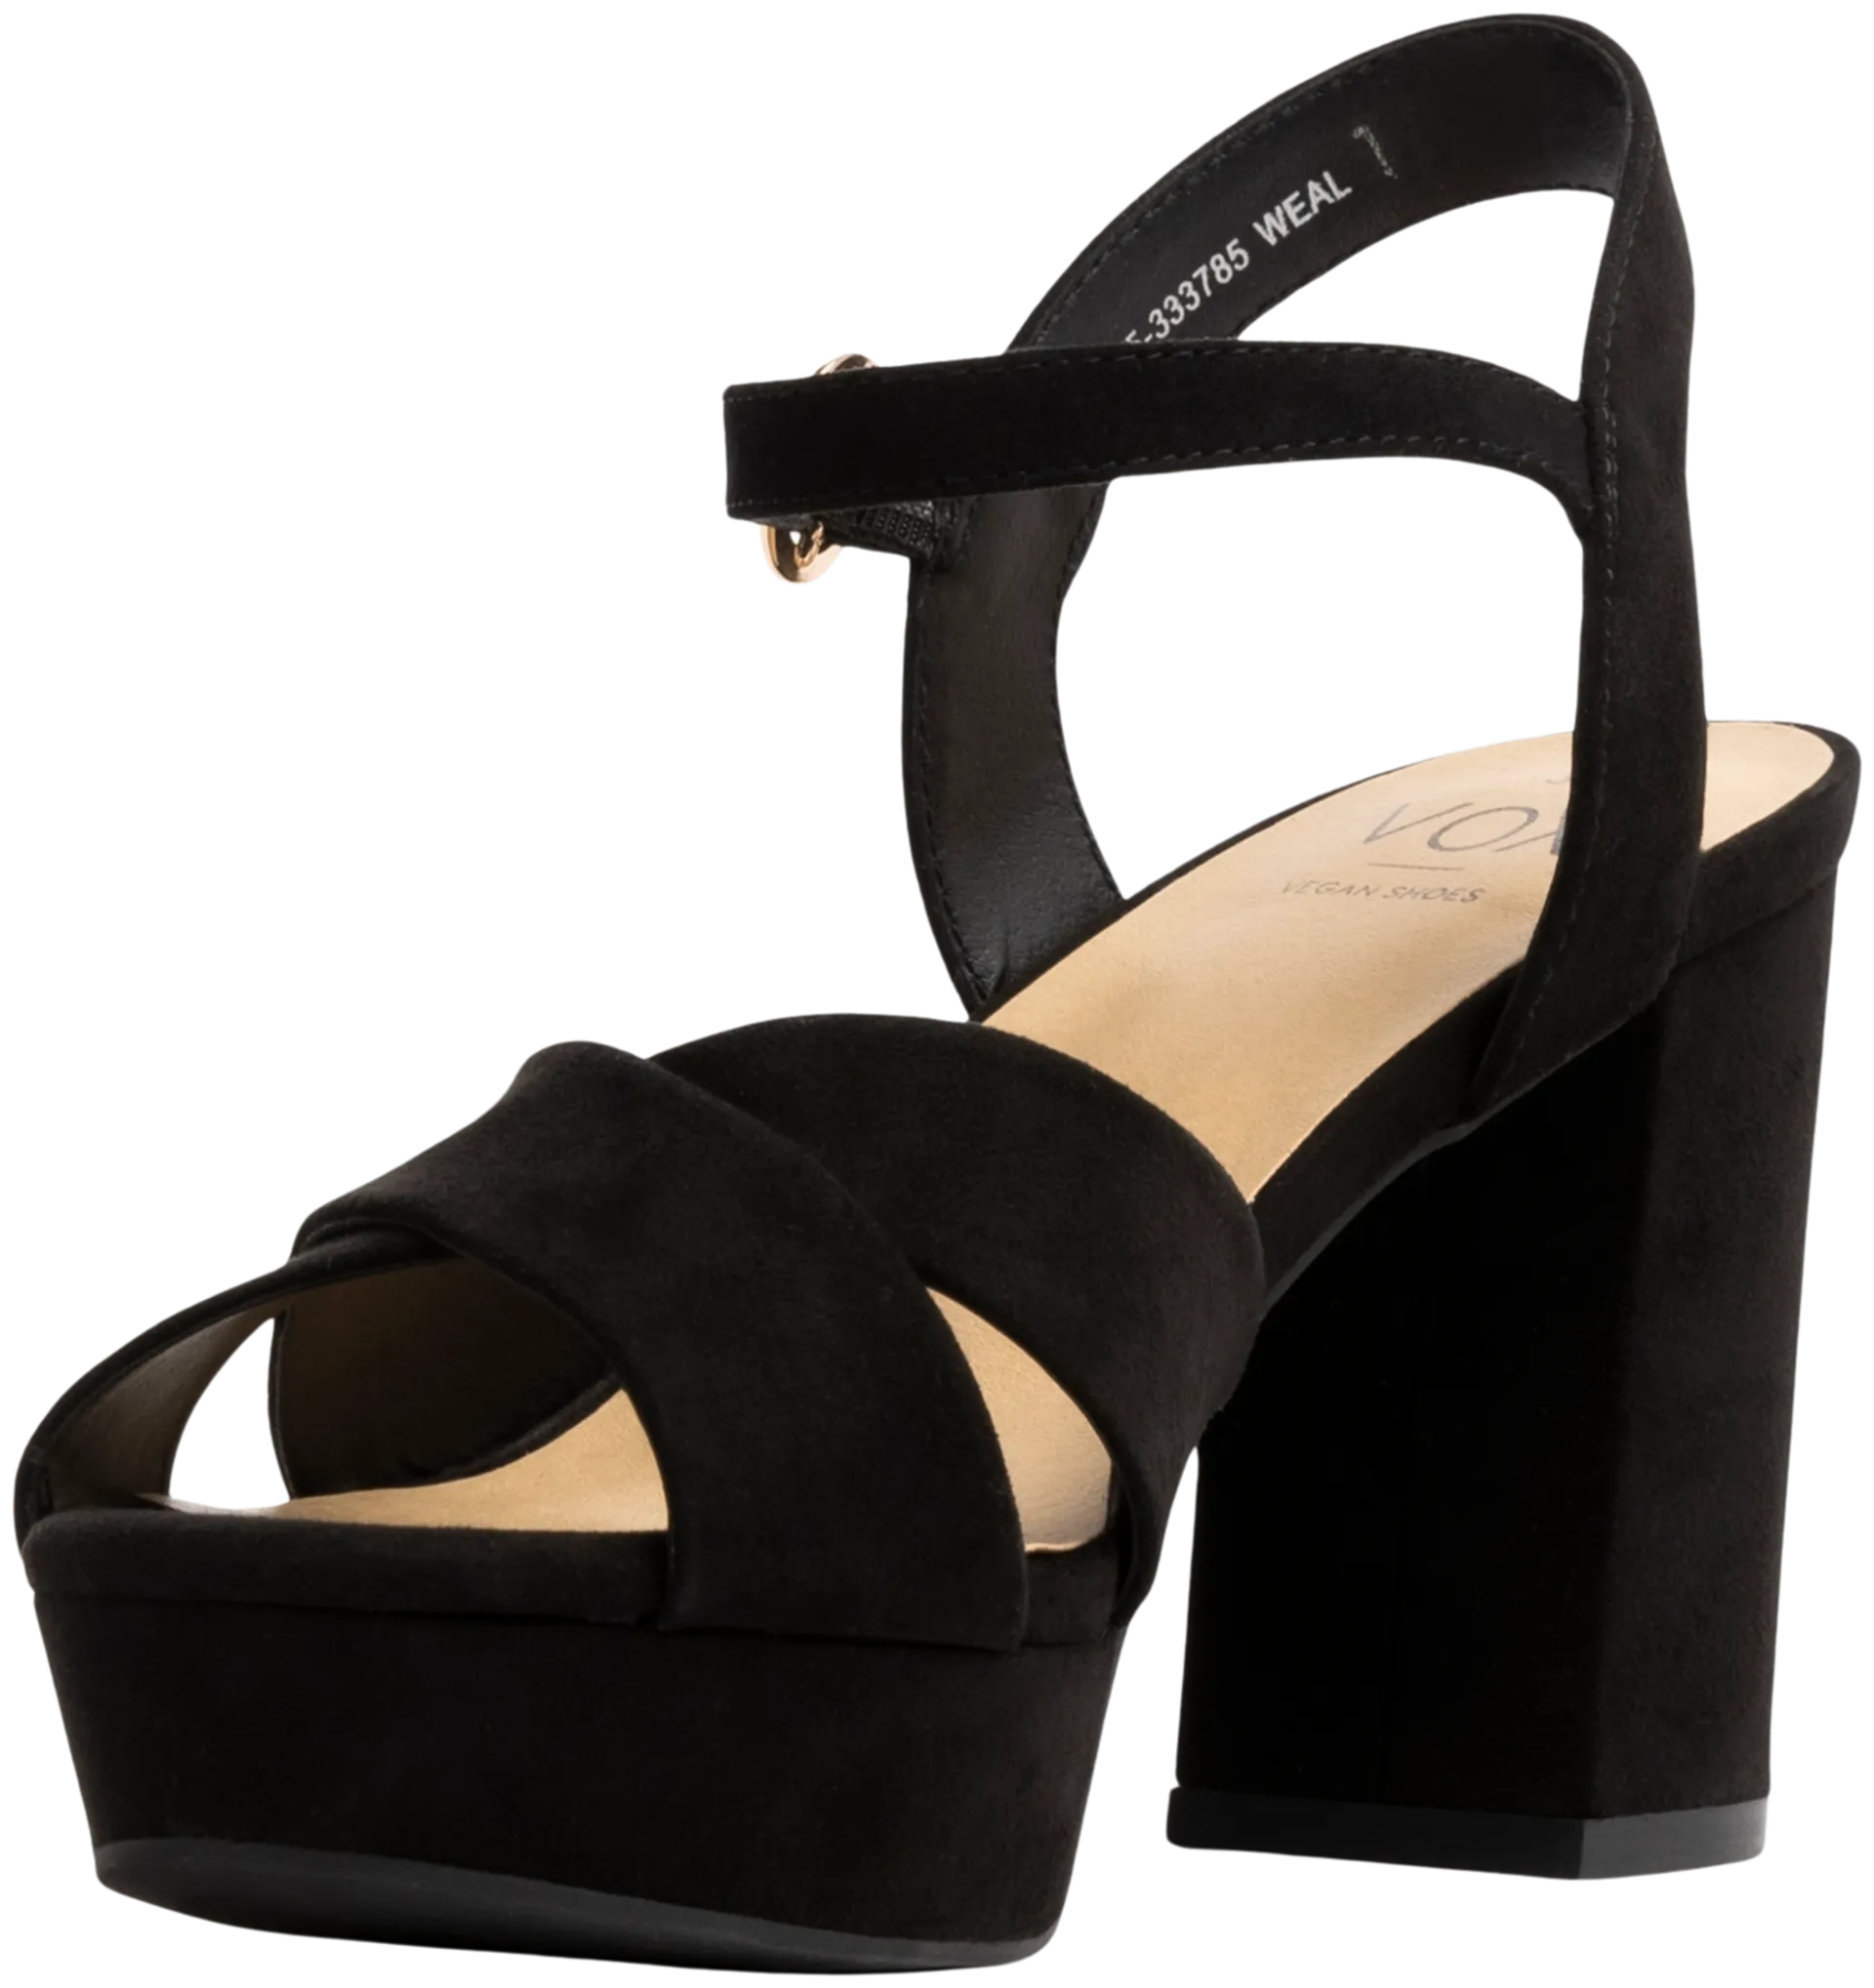 VOX naisten sandaalit Bianca - BLACK - 3